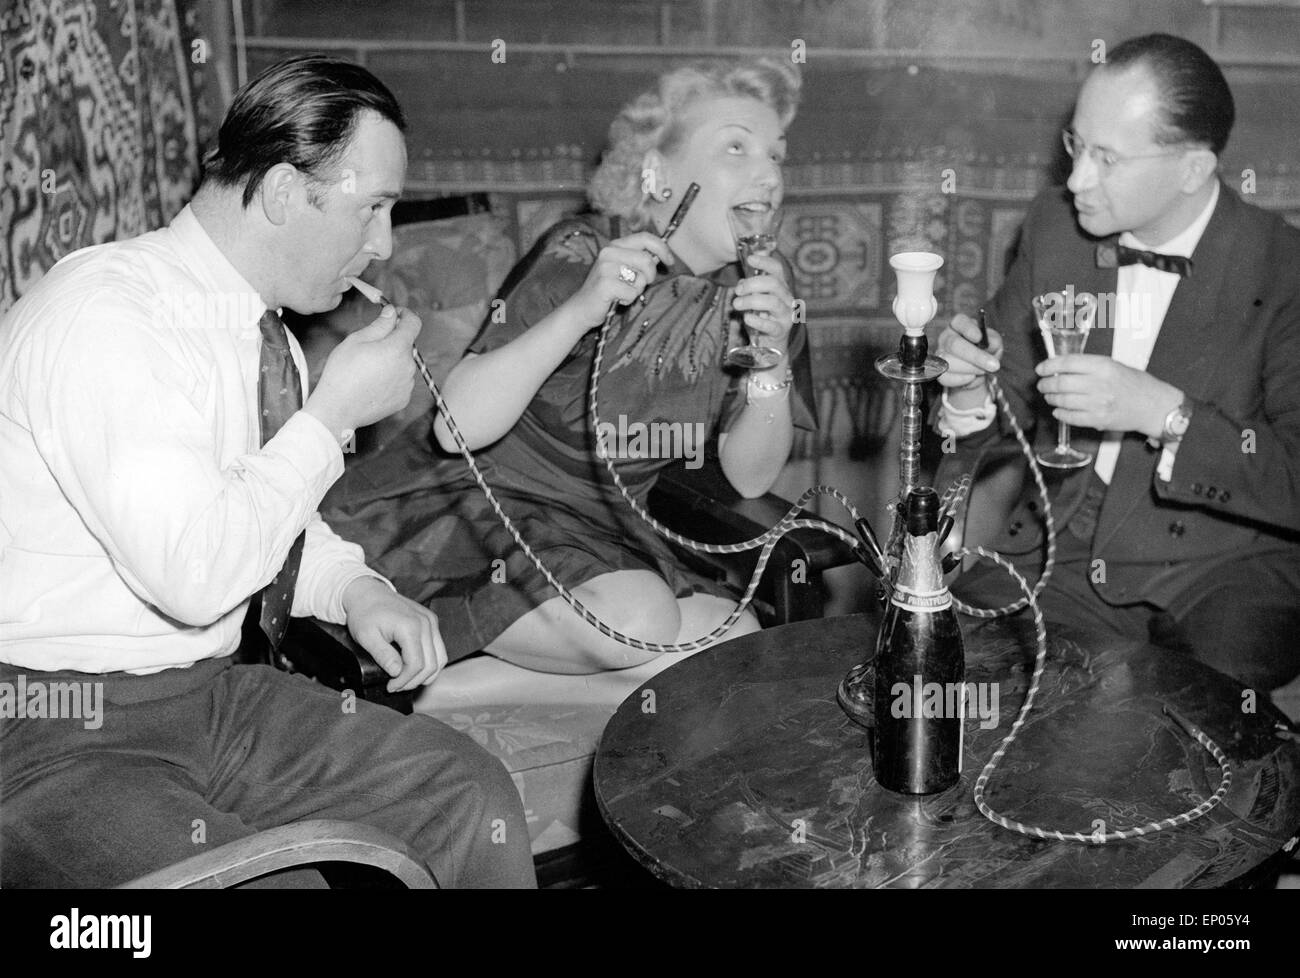 Gäste in einem Nachtclub auf der Reeperbahn in Hamburg genießen ein Glas Sekt zu ihrer Wasserpfeife, 1950er Jahre. Guests of a n Stock Photo